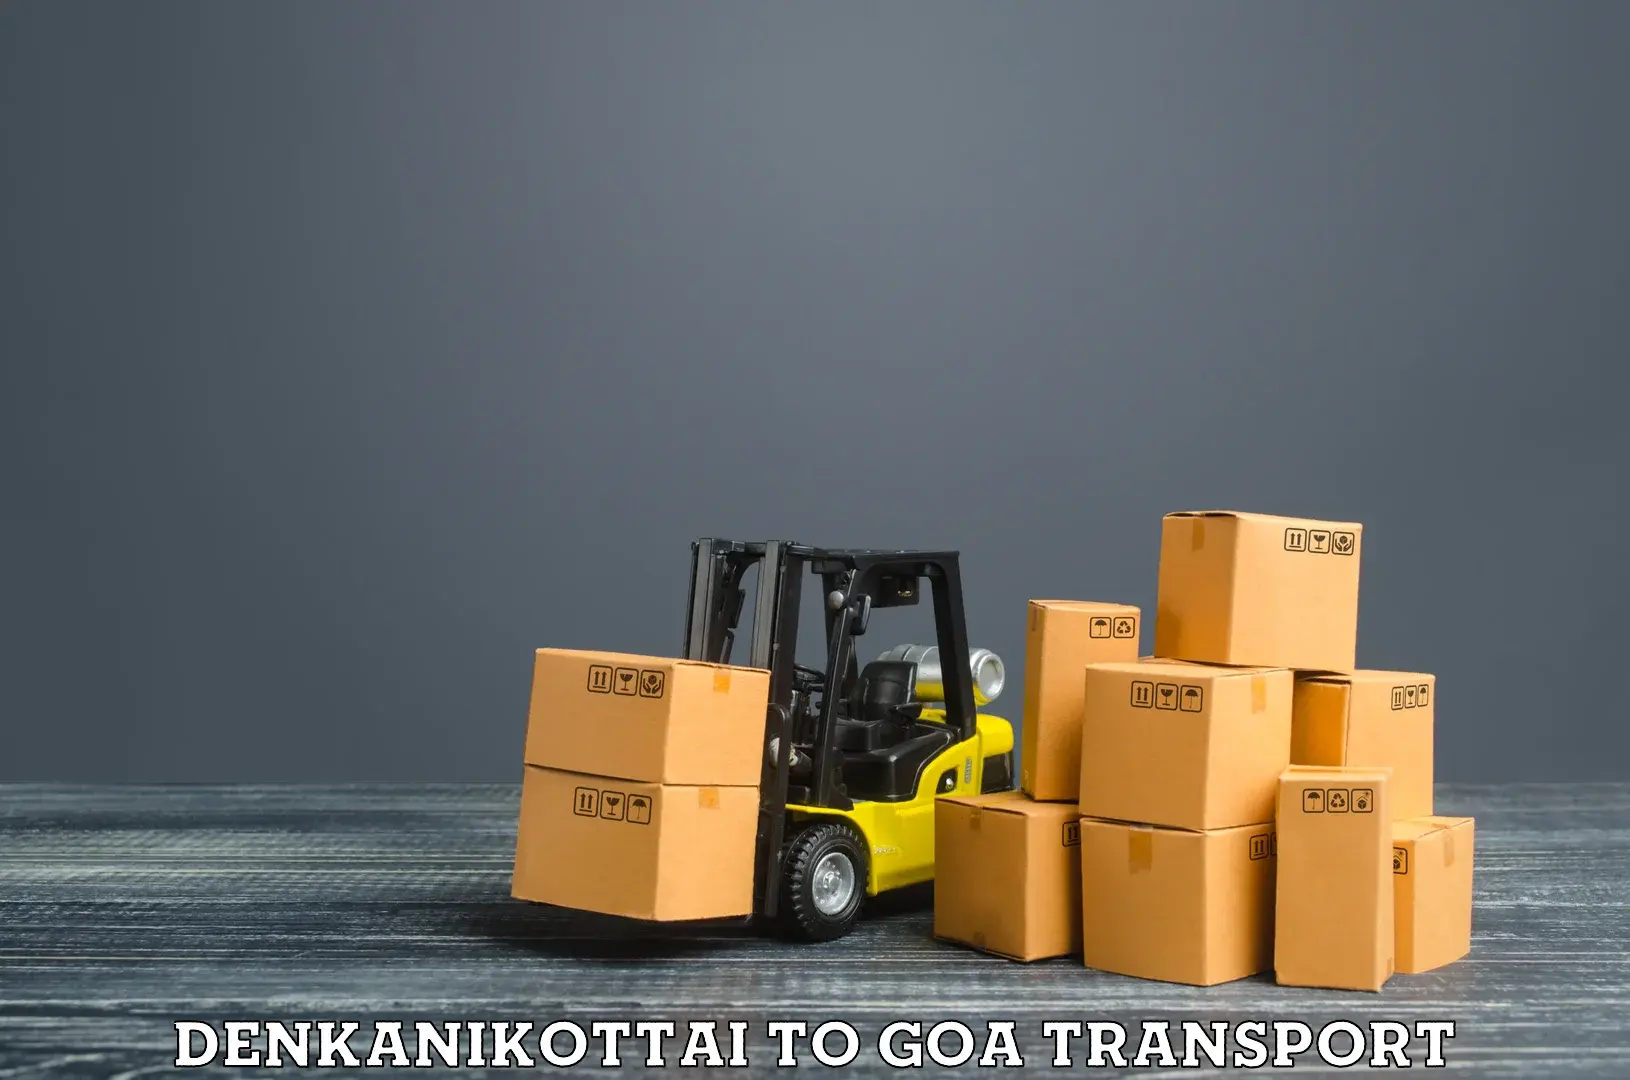 Cycle transportation service Denkanikottai to NIT Goa